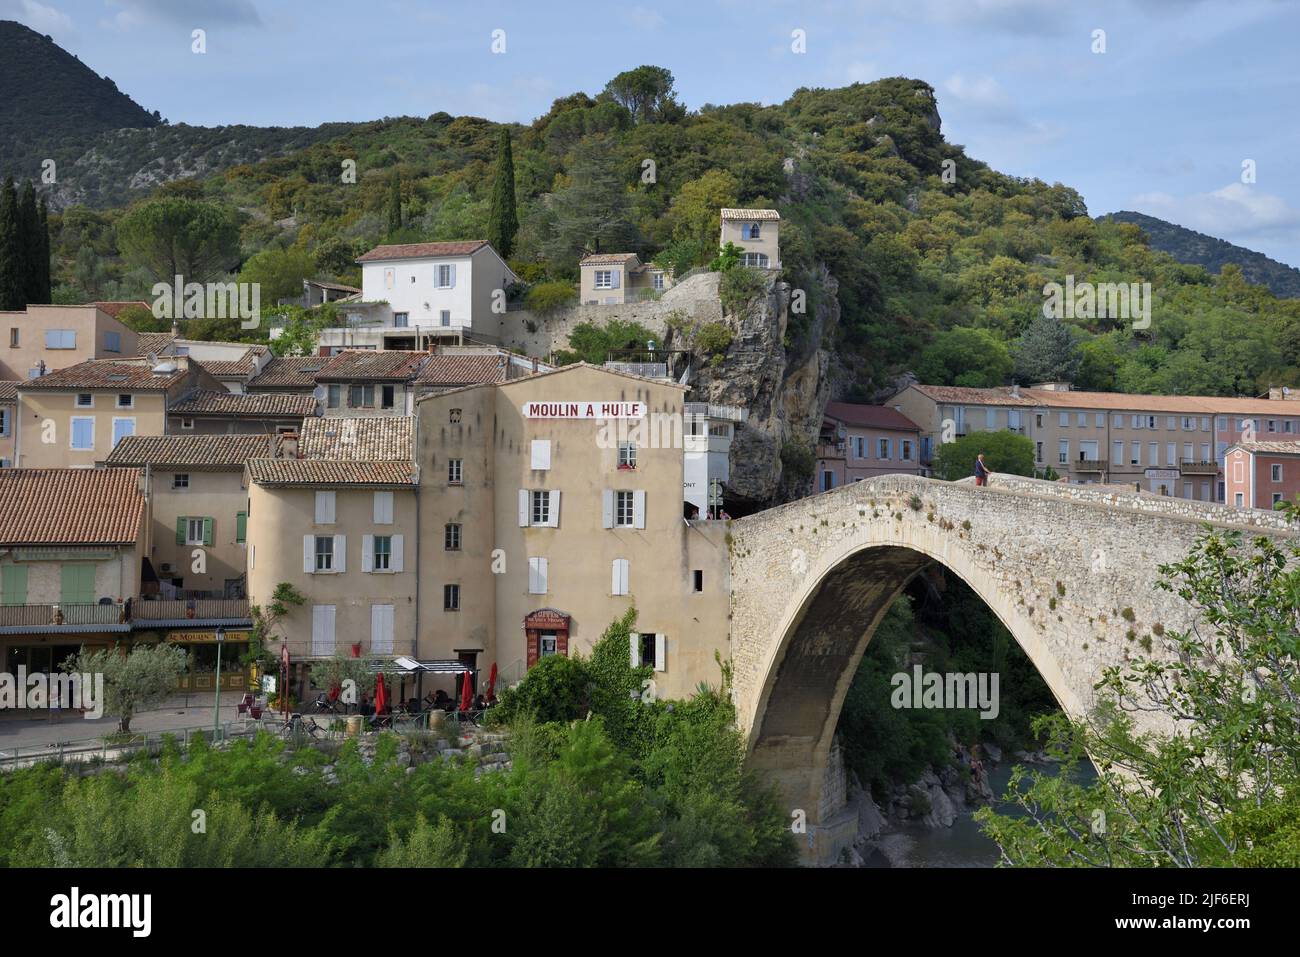 Die Altstadt oder das historische Viertel von Nyons & ihre mittelalterliche Brücke, bekannt als die römische Brücke, Nyons Drôme Provence Frankreich Stockfoto